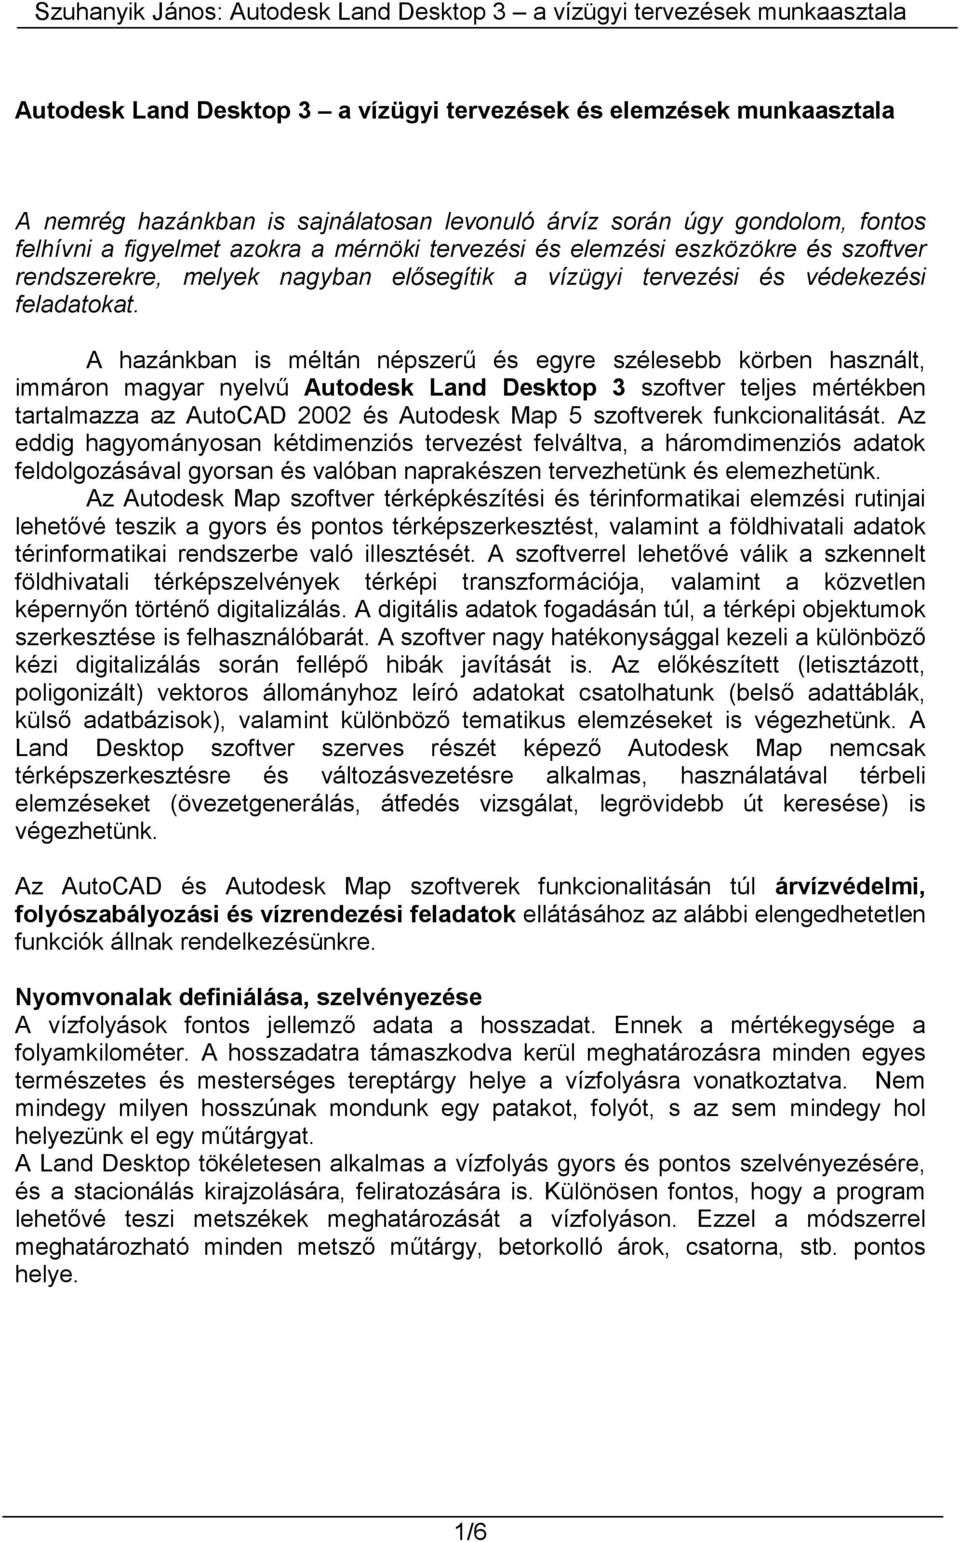 A hazánkban is méltán népszerű és egyre szélesebb körben használt, immáron magyar nyelvű Autodesk Land Desktop 3 szoftver teljes mértékben tartalmazza az AutoCAD 2002 és Autodesk Map 5 szoftverek